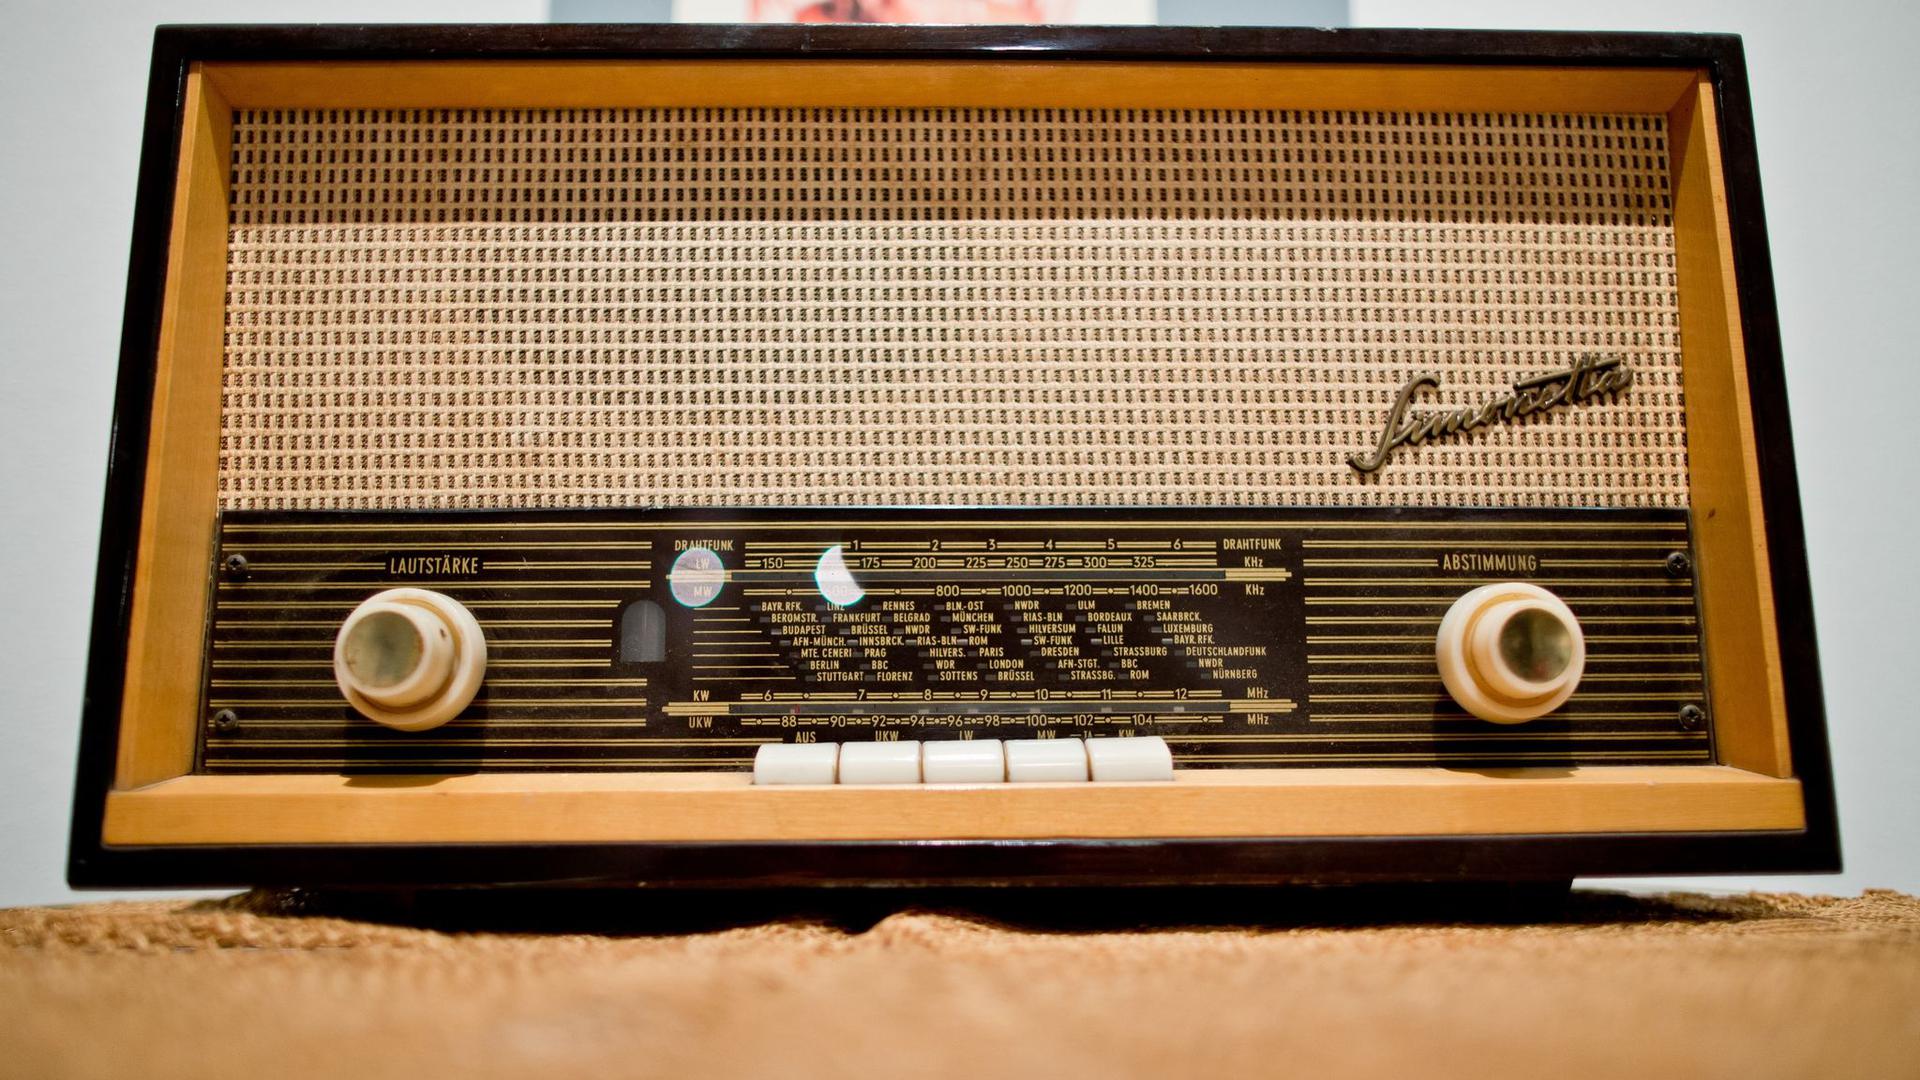 Das Quelle-Radiogerät Simonetta Stereo-Großsuper ST 6501 stammt aus dem Jahr 1965.